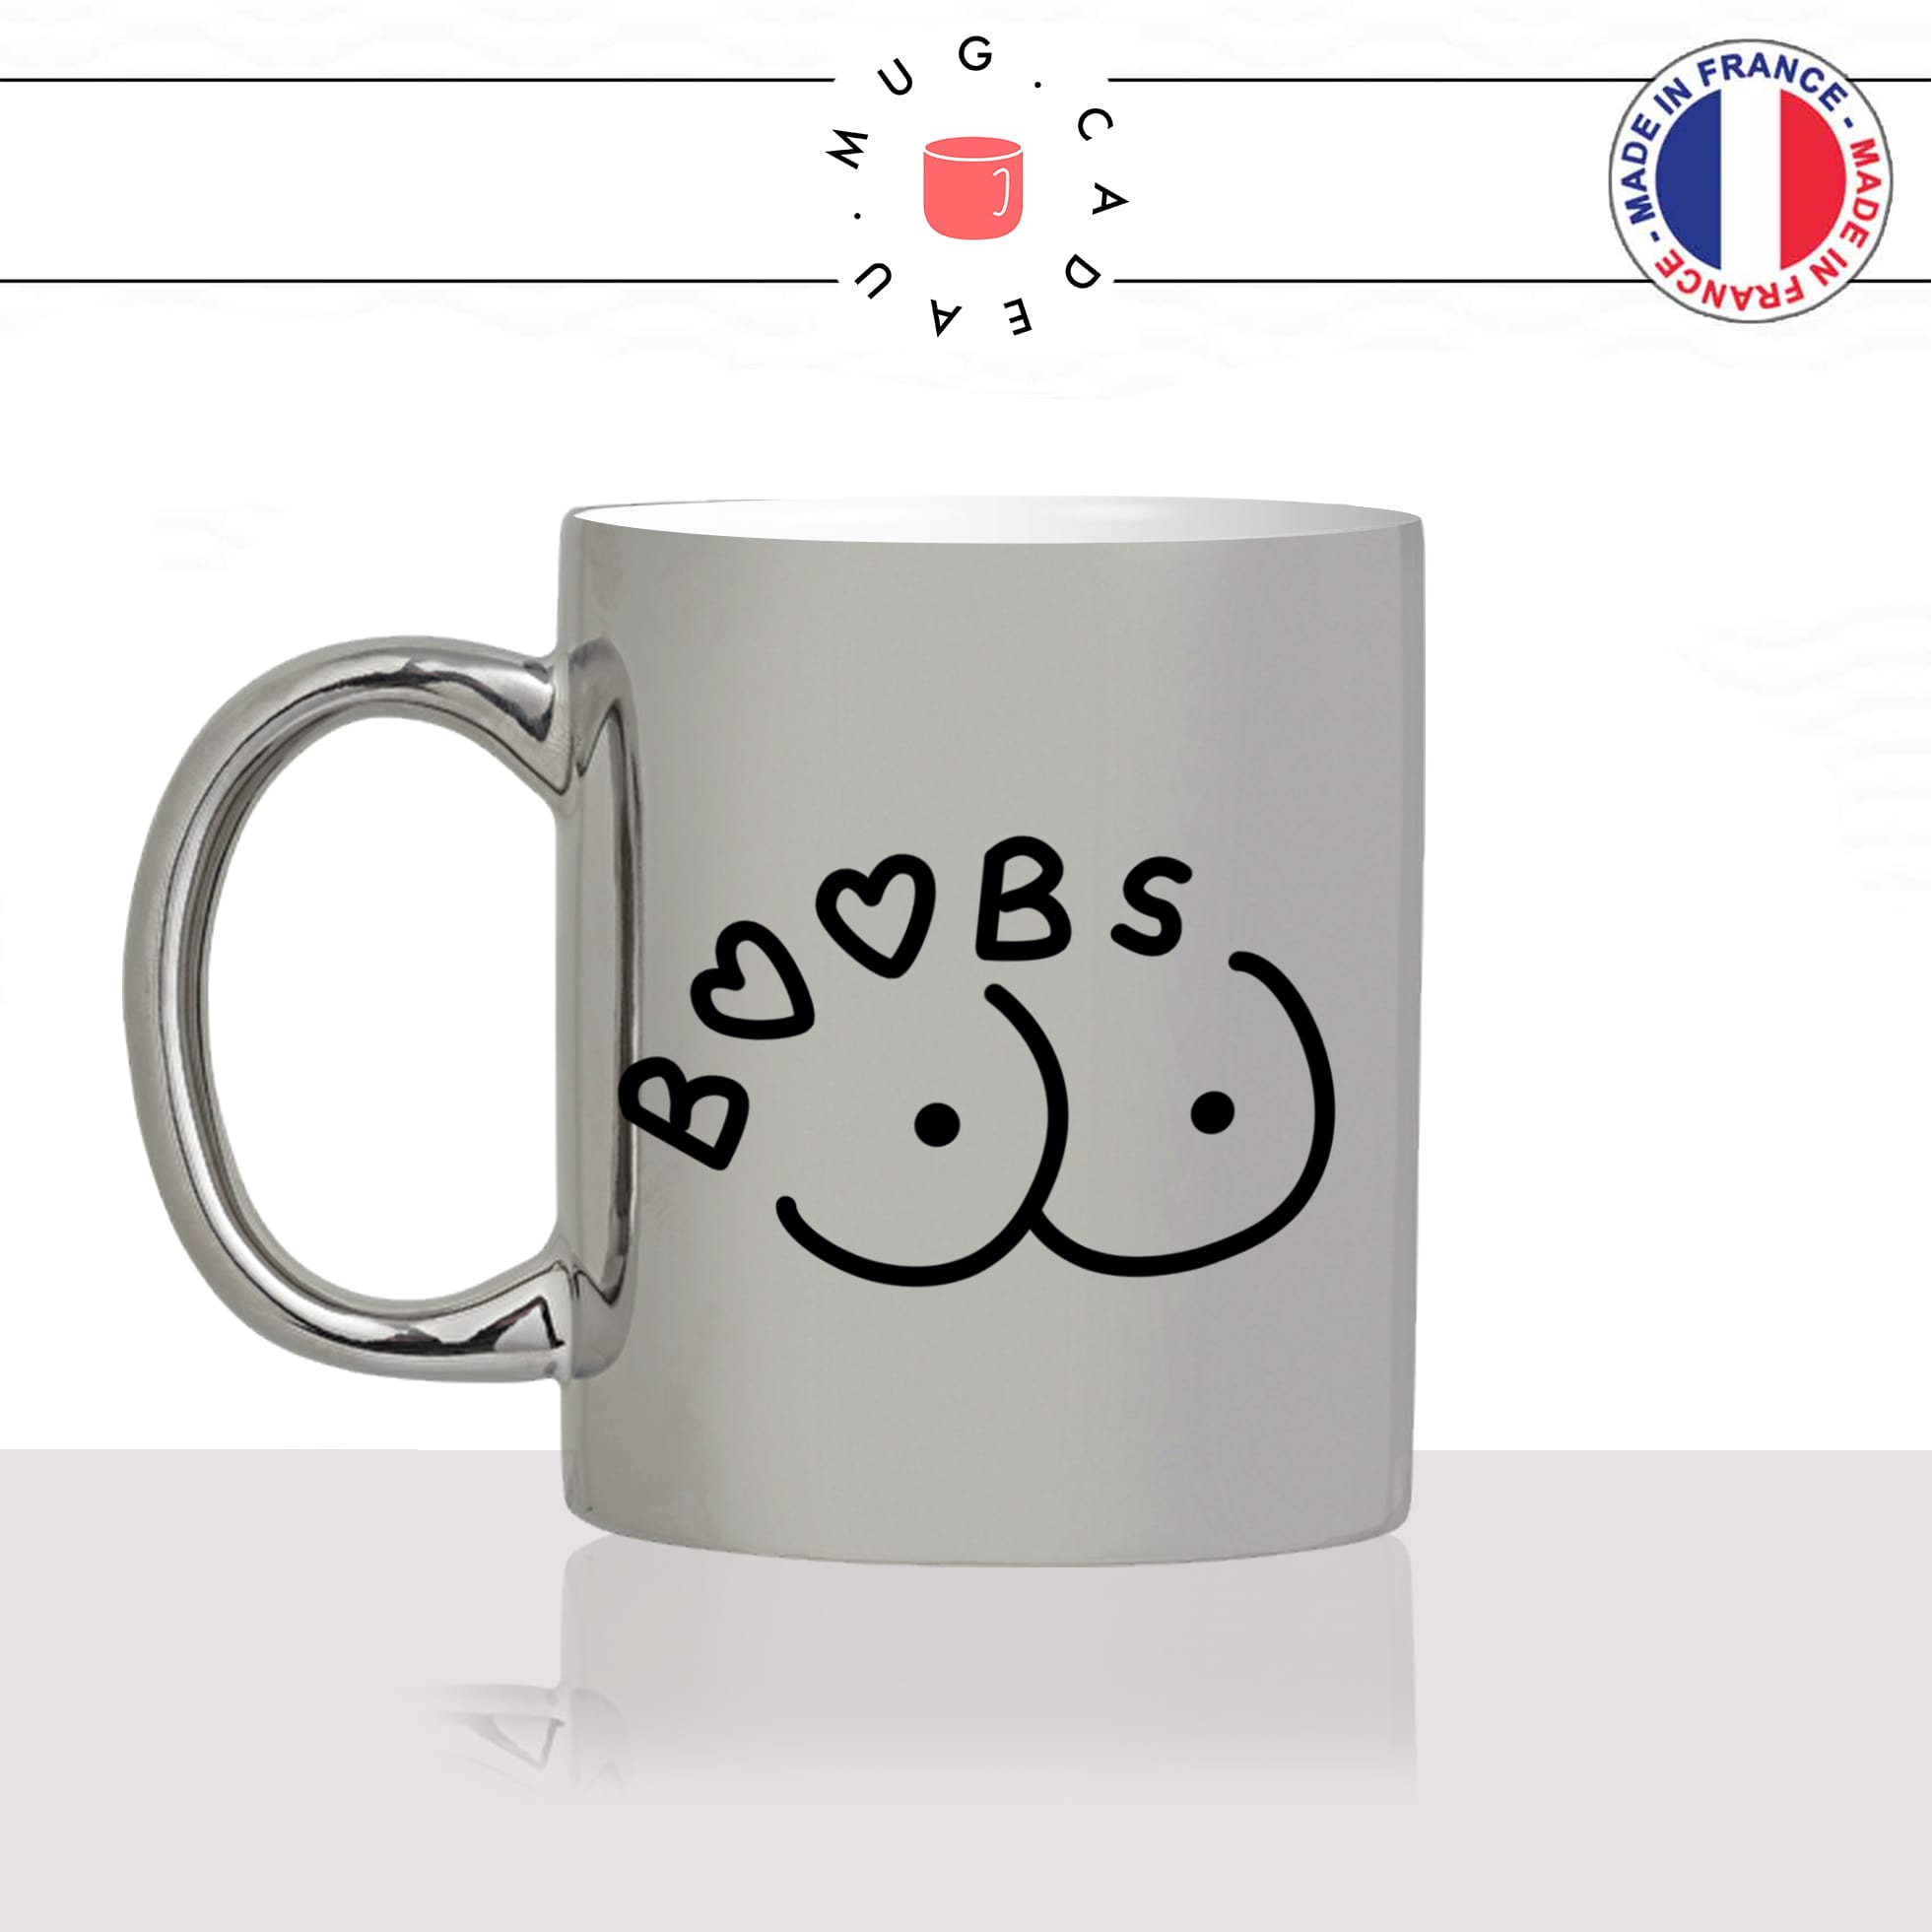 mug-tasse-argent-argenté-silver-boobs-seins-poitrine-femme-copine-collegue-decoration-humour-idée-cadeau-fun-cool-café-thé-original-min